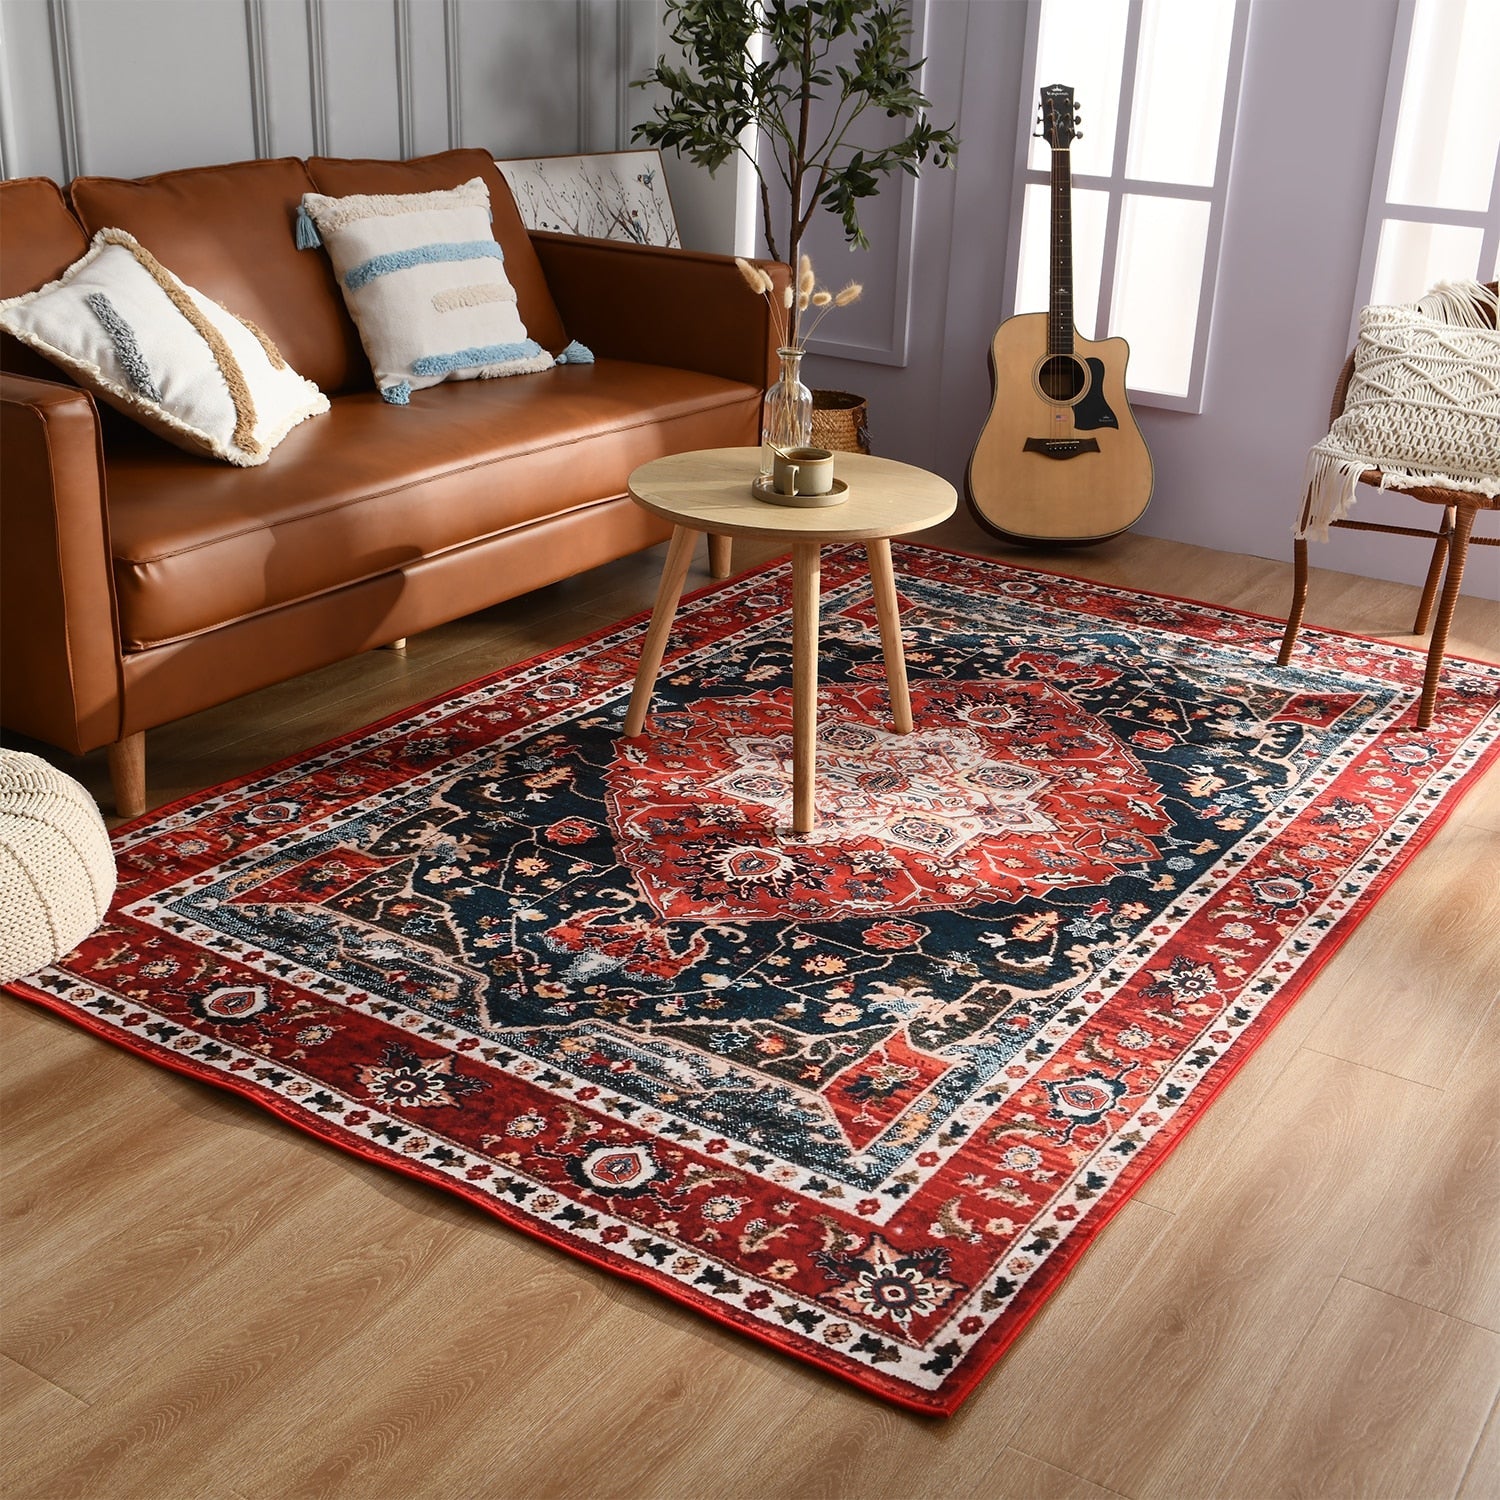 Retro Ethnic Carpets Turkish Persian Rug for Living Room Bedside Bedroom Vintage Floor Mat Entrance Doormat Carpet Large Rug